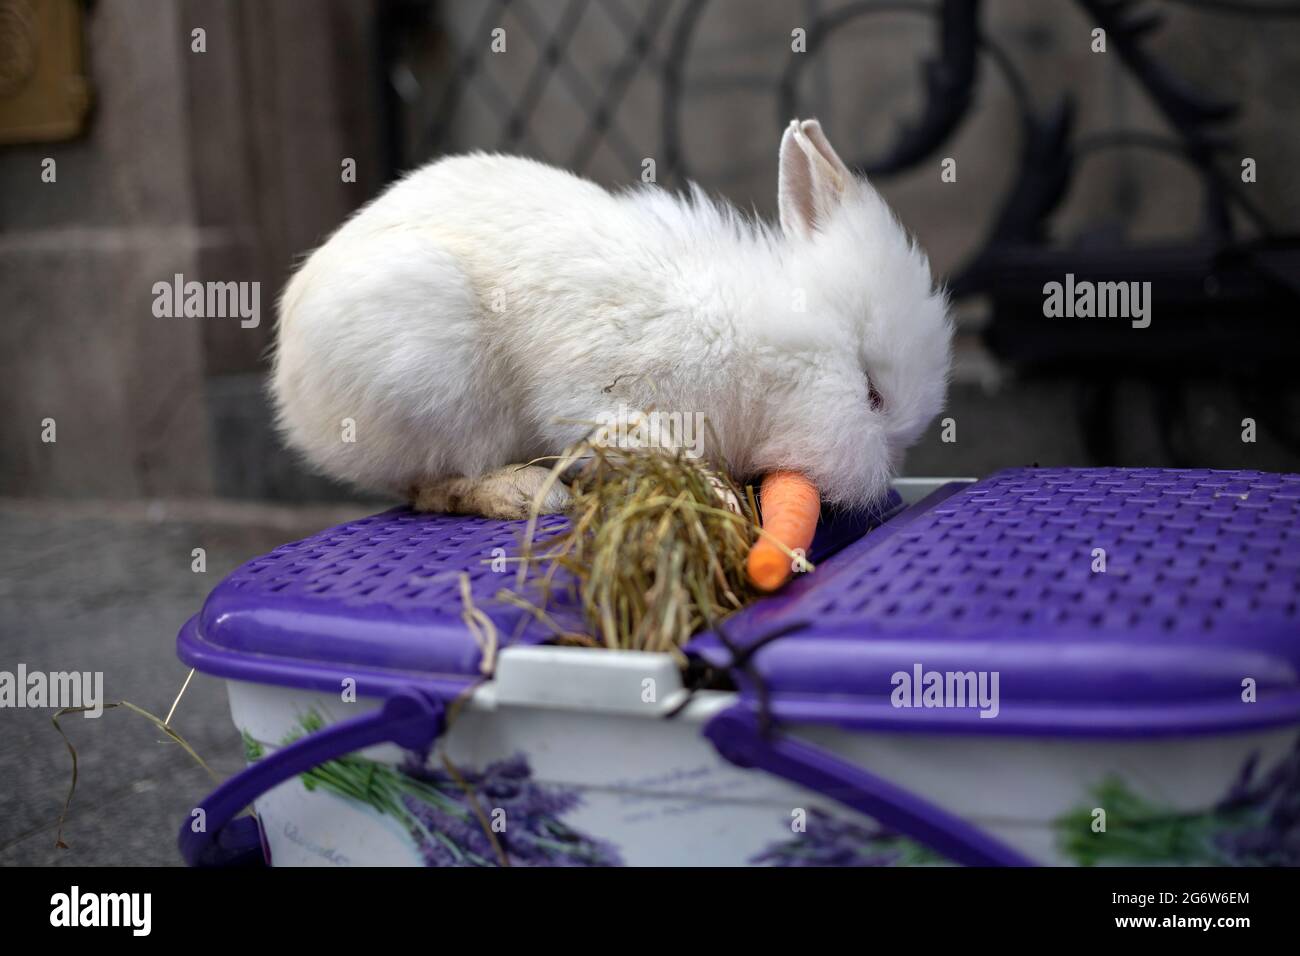 Little white rabbit eating carrot Stock Photo